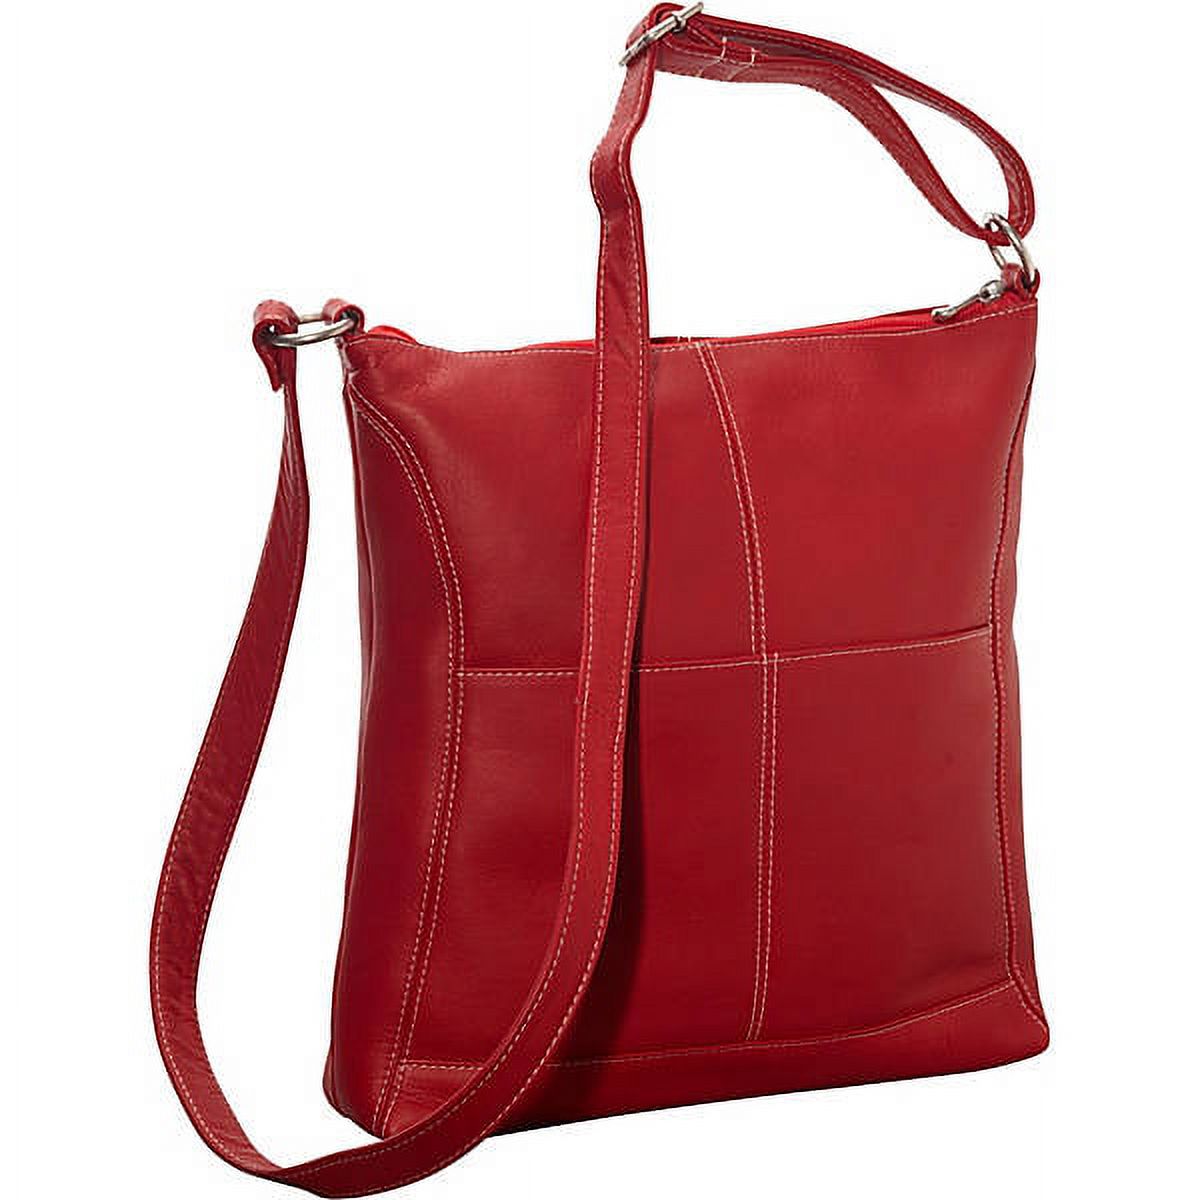 Le Donne Leather Easy Slip Crossbody Shoulder Bag LD-7052 - image 4 of 5